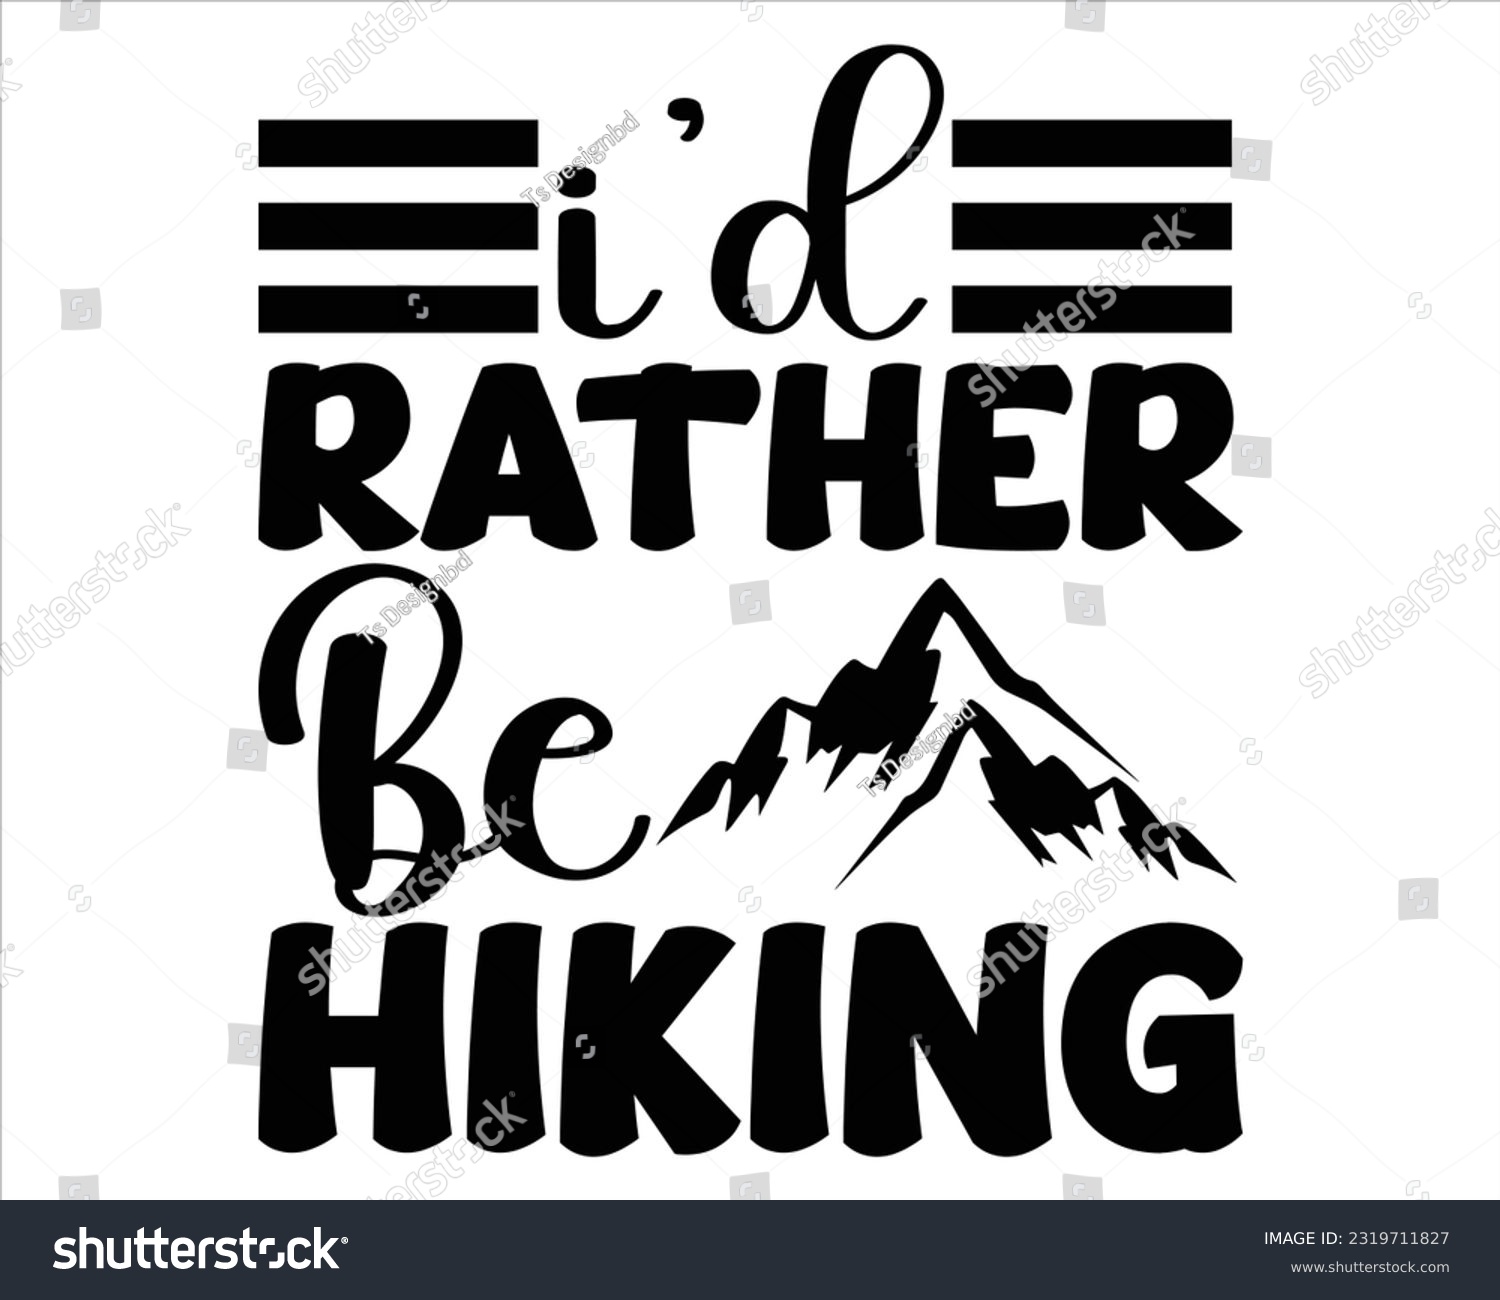 SVG of I'd Rather Be Hiking Svg Design, Hiking Svg Design, Mountain illustration, outdoor adventure ,Outdoor Adventure Inspiring Motivation Quote, camping, hiking svg